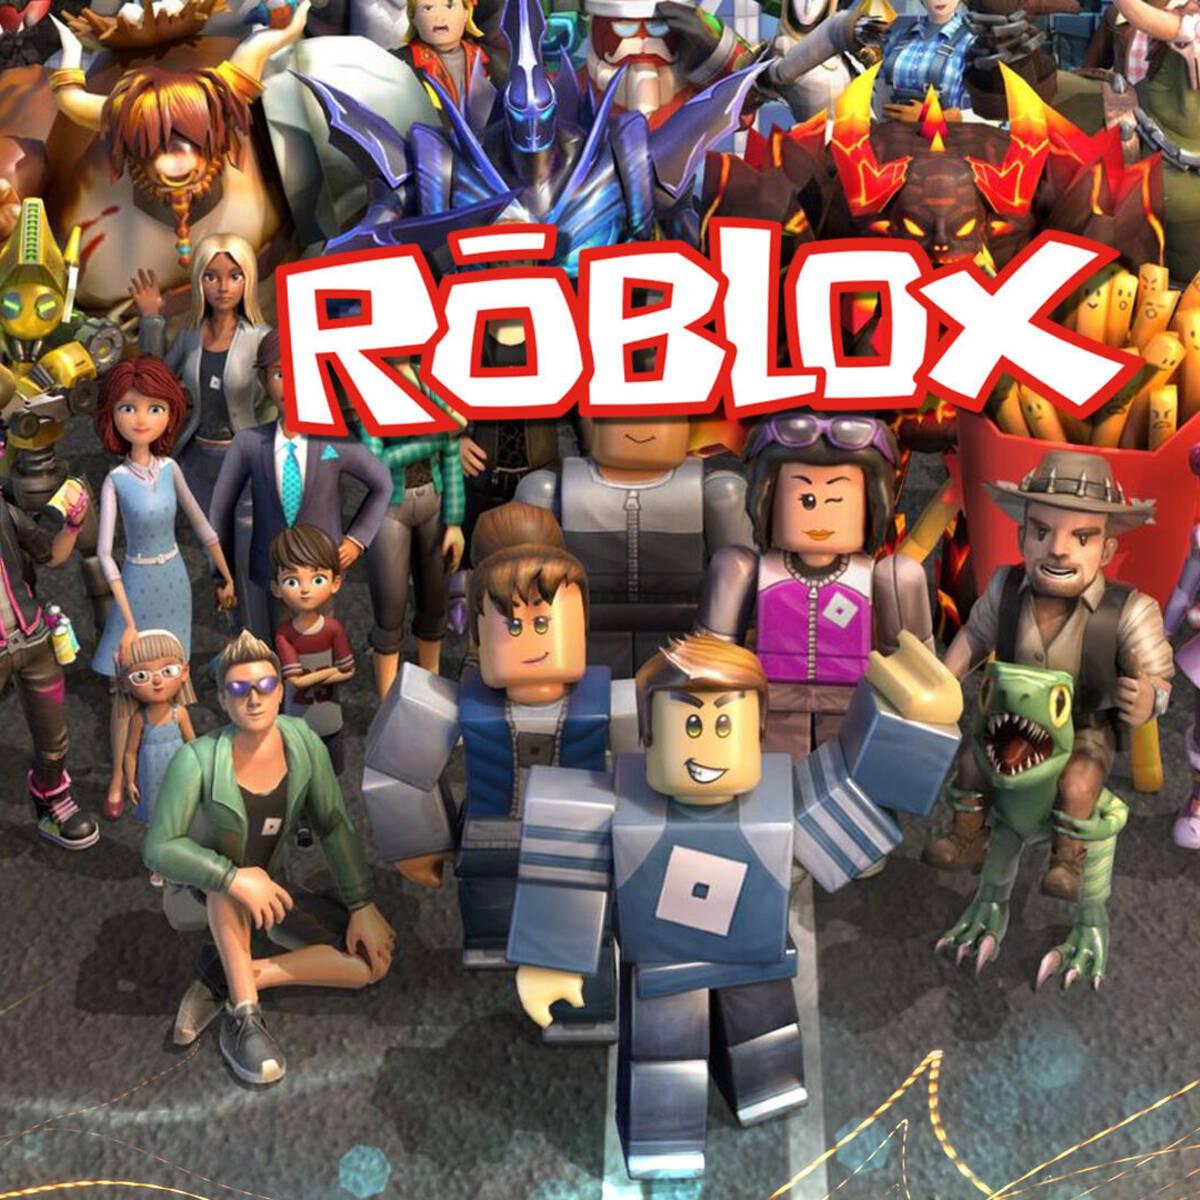 Roblox: Lista de códigos gratis para los mejores juegos a junio